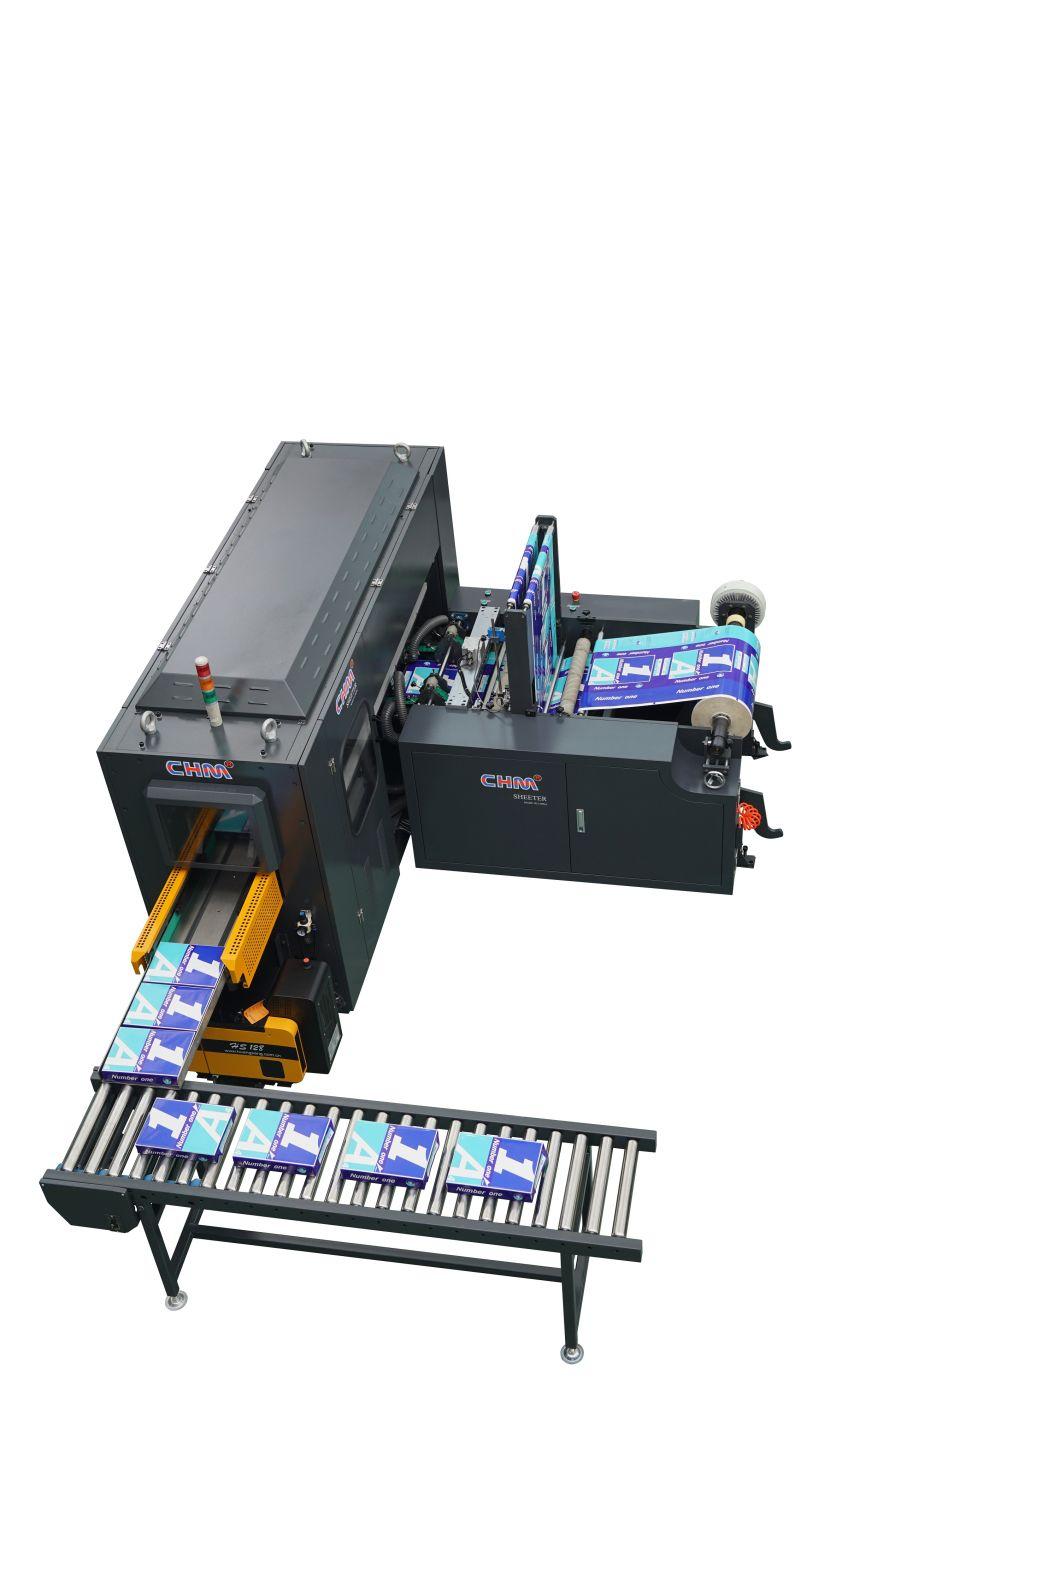 Copy Paper Cutting Machine Supplier in China